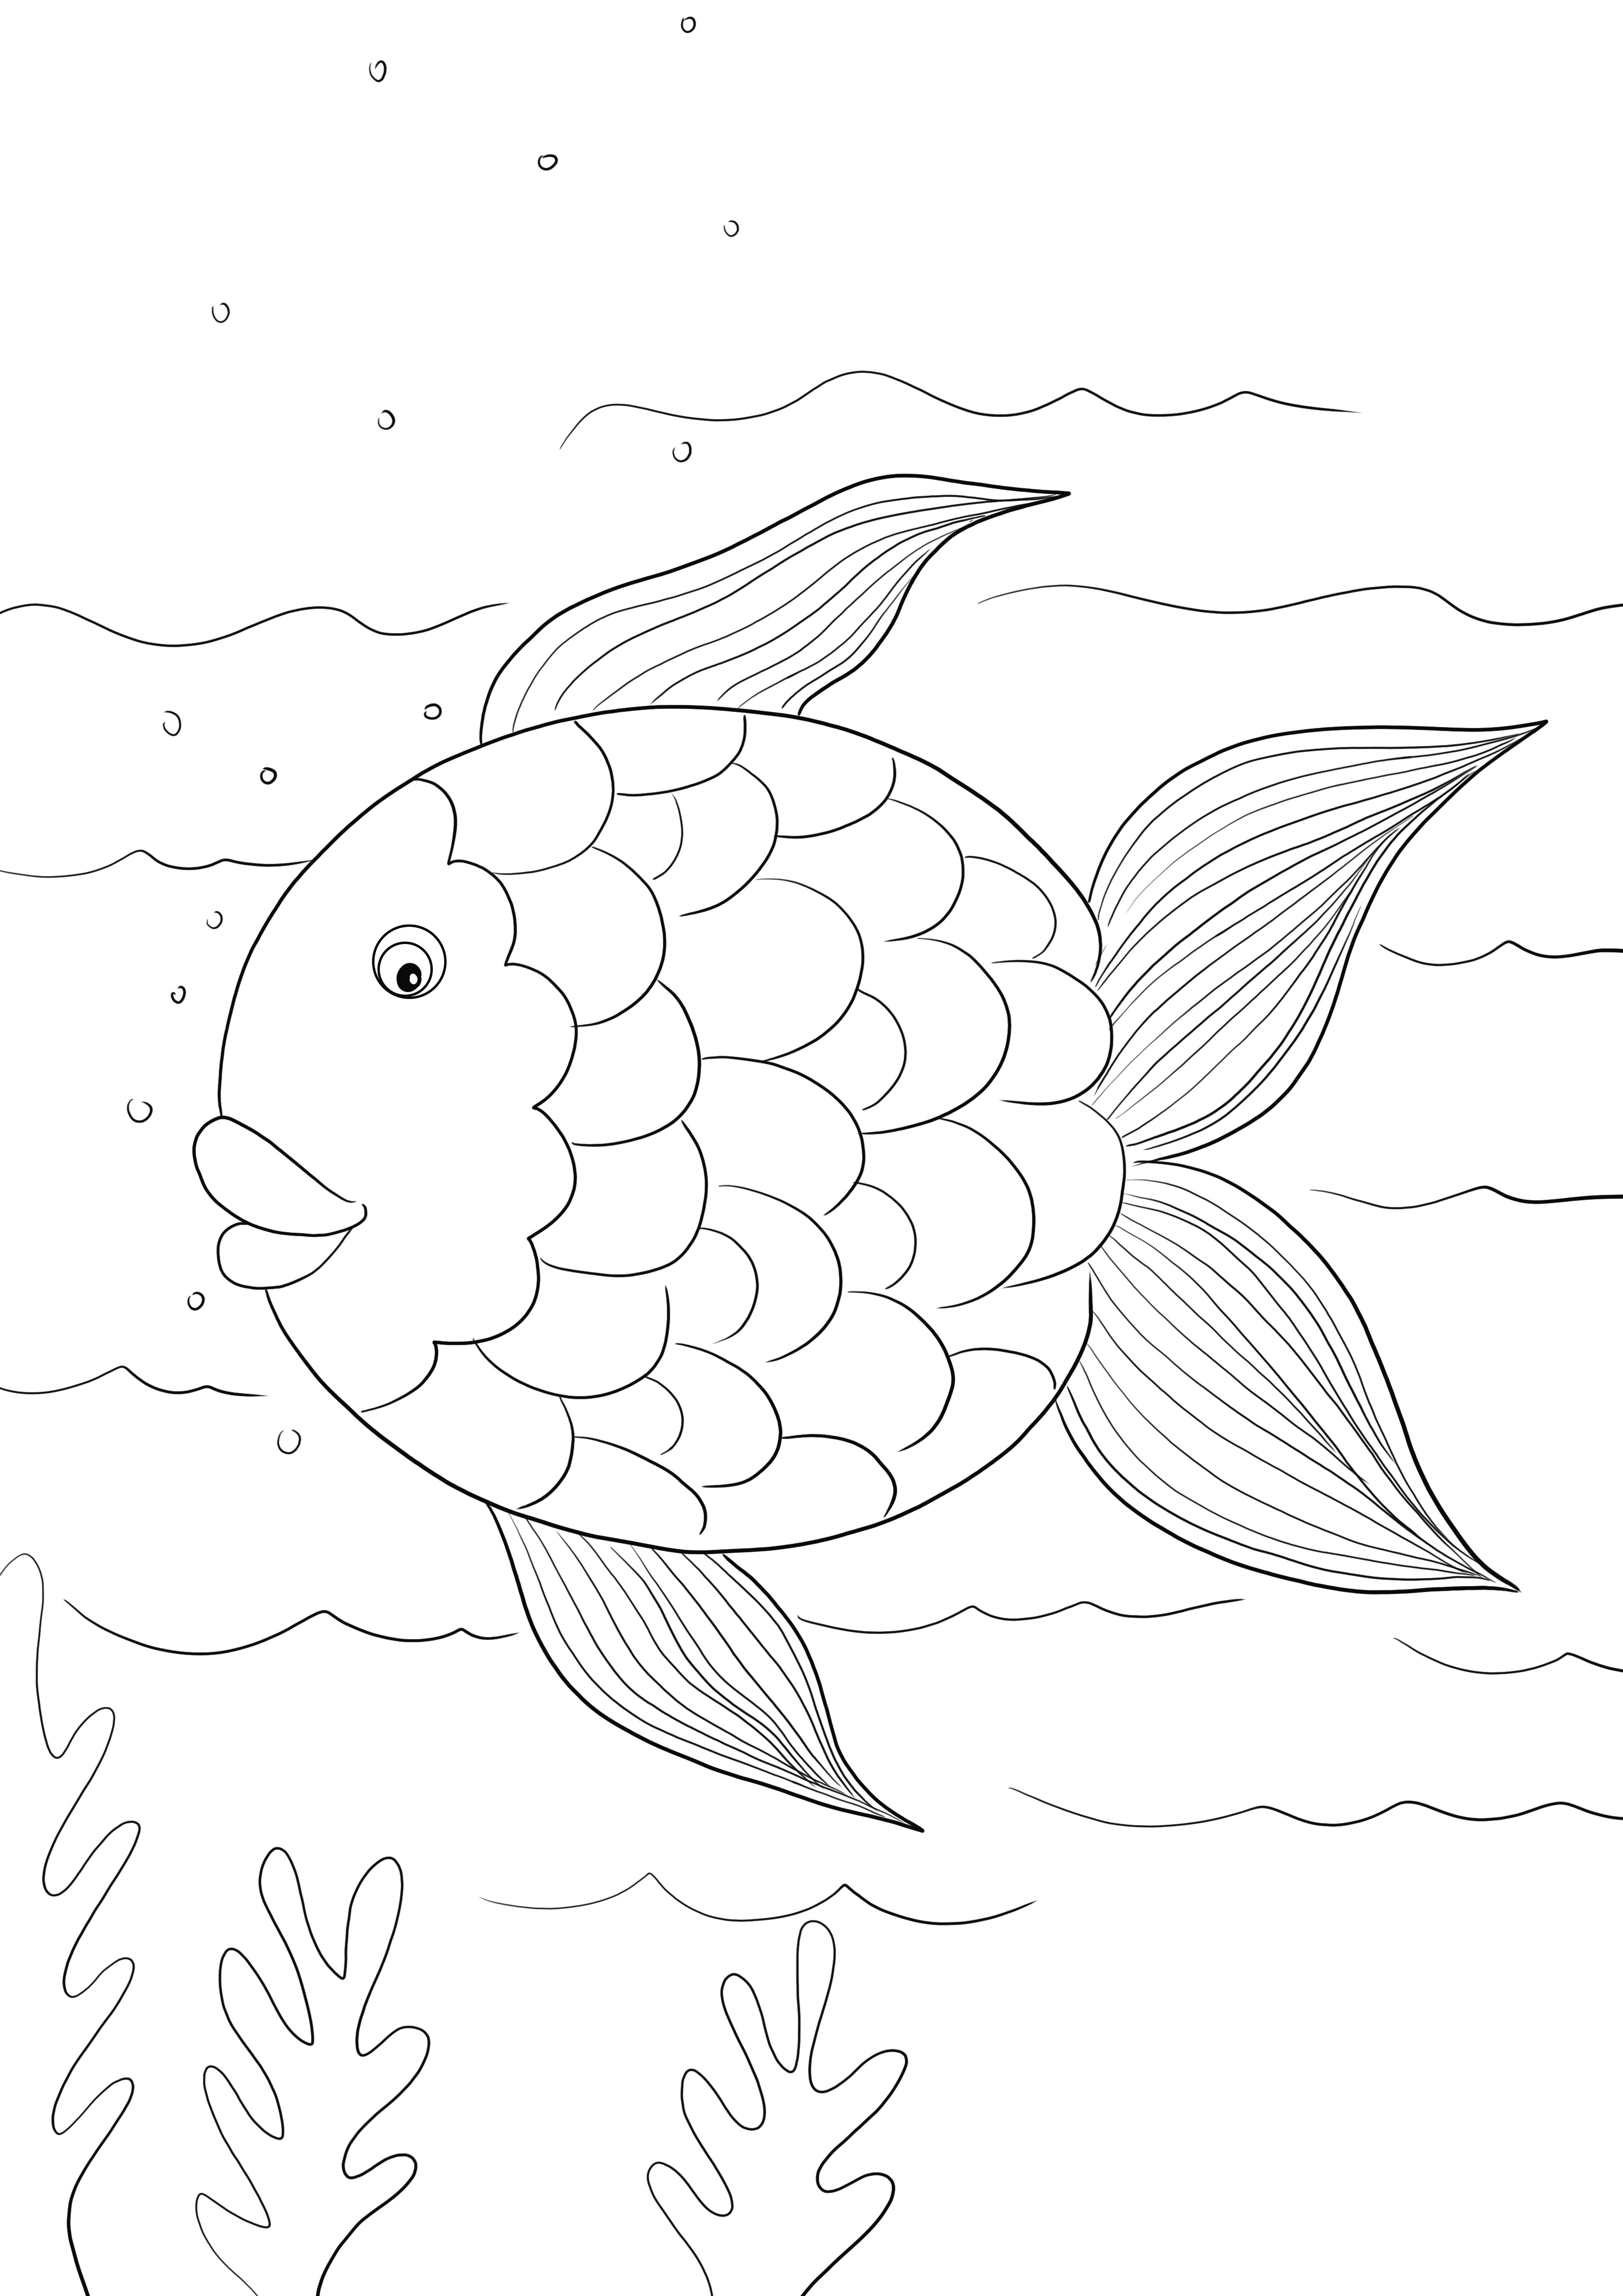 A Rainbow Fish sablon ingyenesen nyomtatható vagy letölthető, és gyerekeknek való színezésre használható